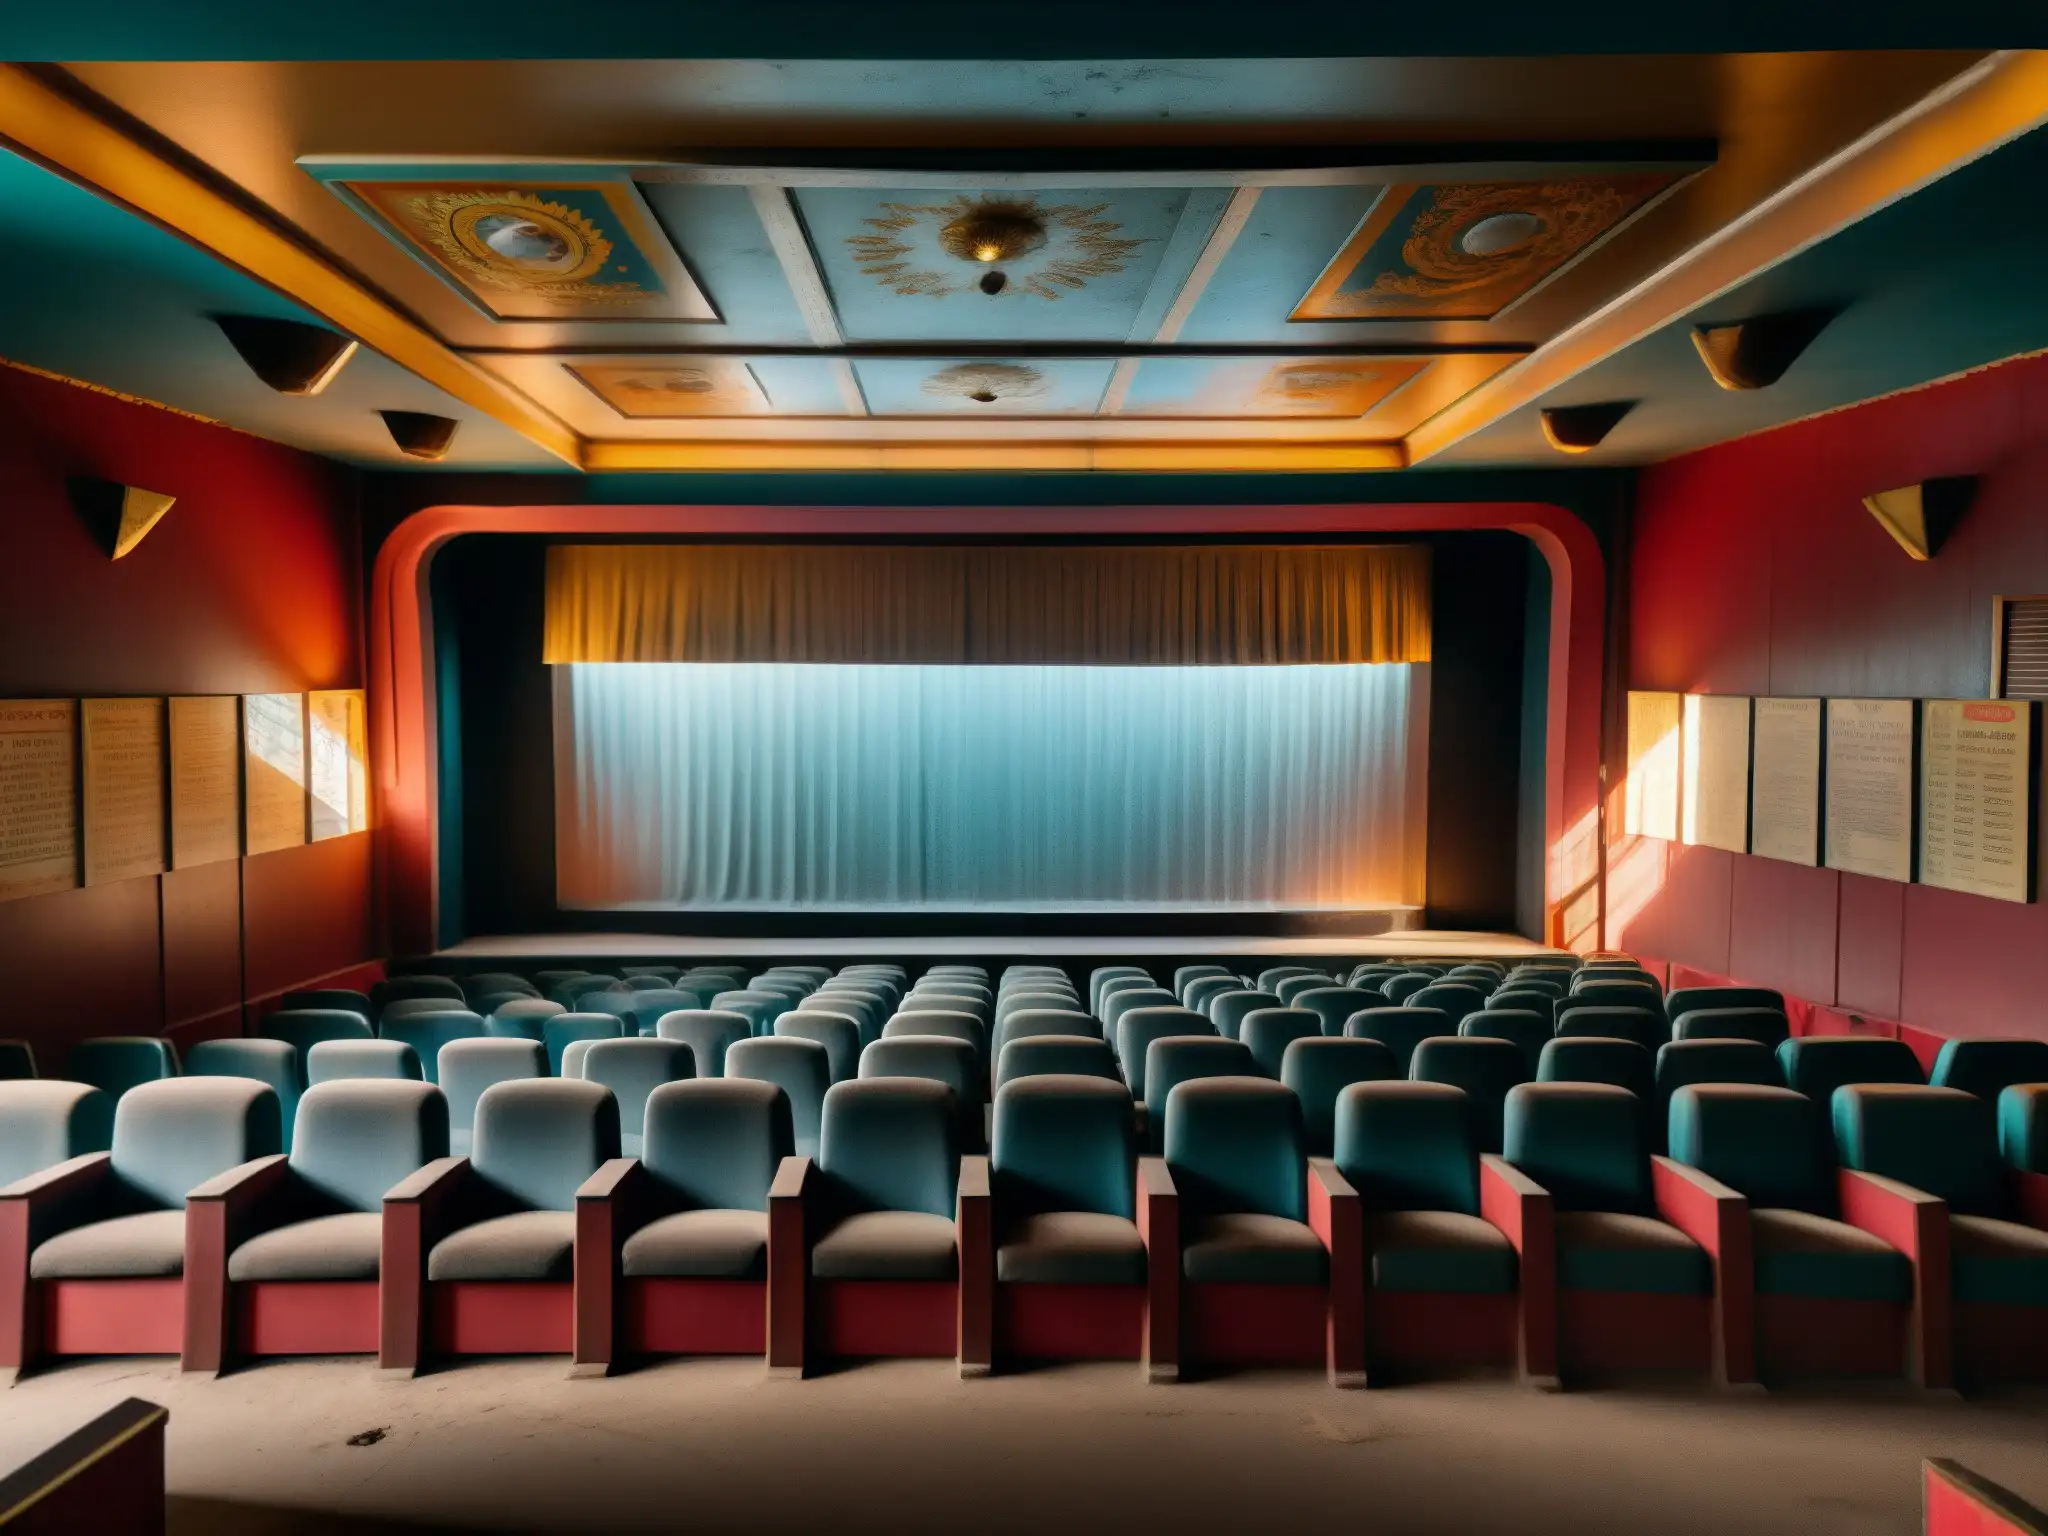 Fantasmagórico cine Bollywood abandonado, con carteles descoloridos y asientos polvorientos, bañado por la luz solar